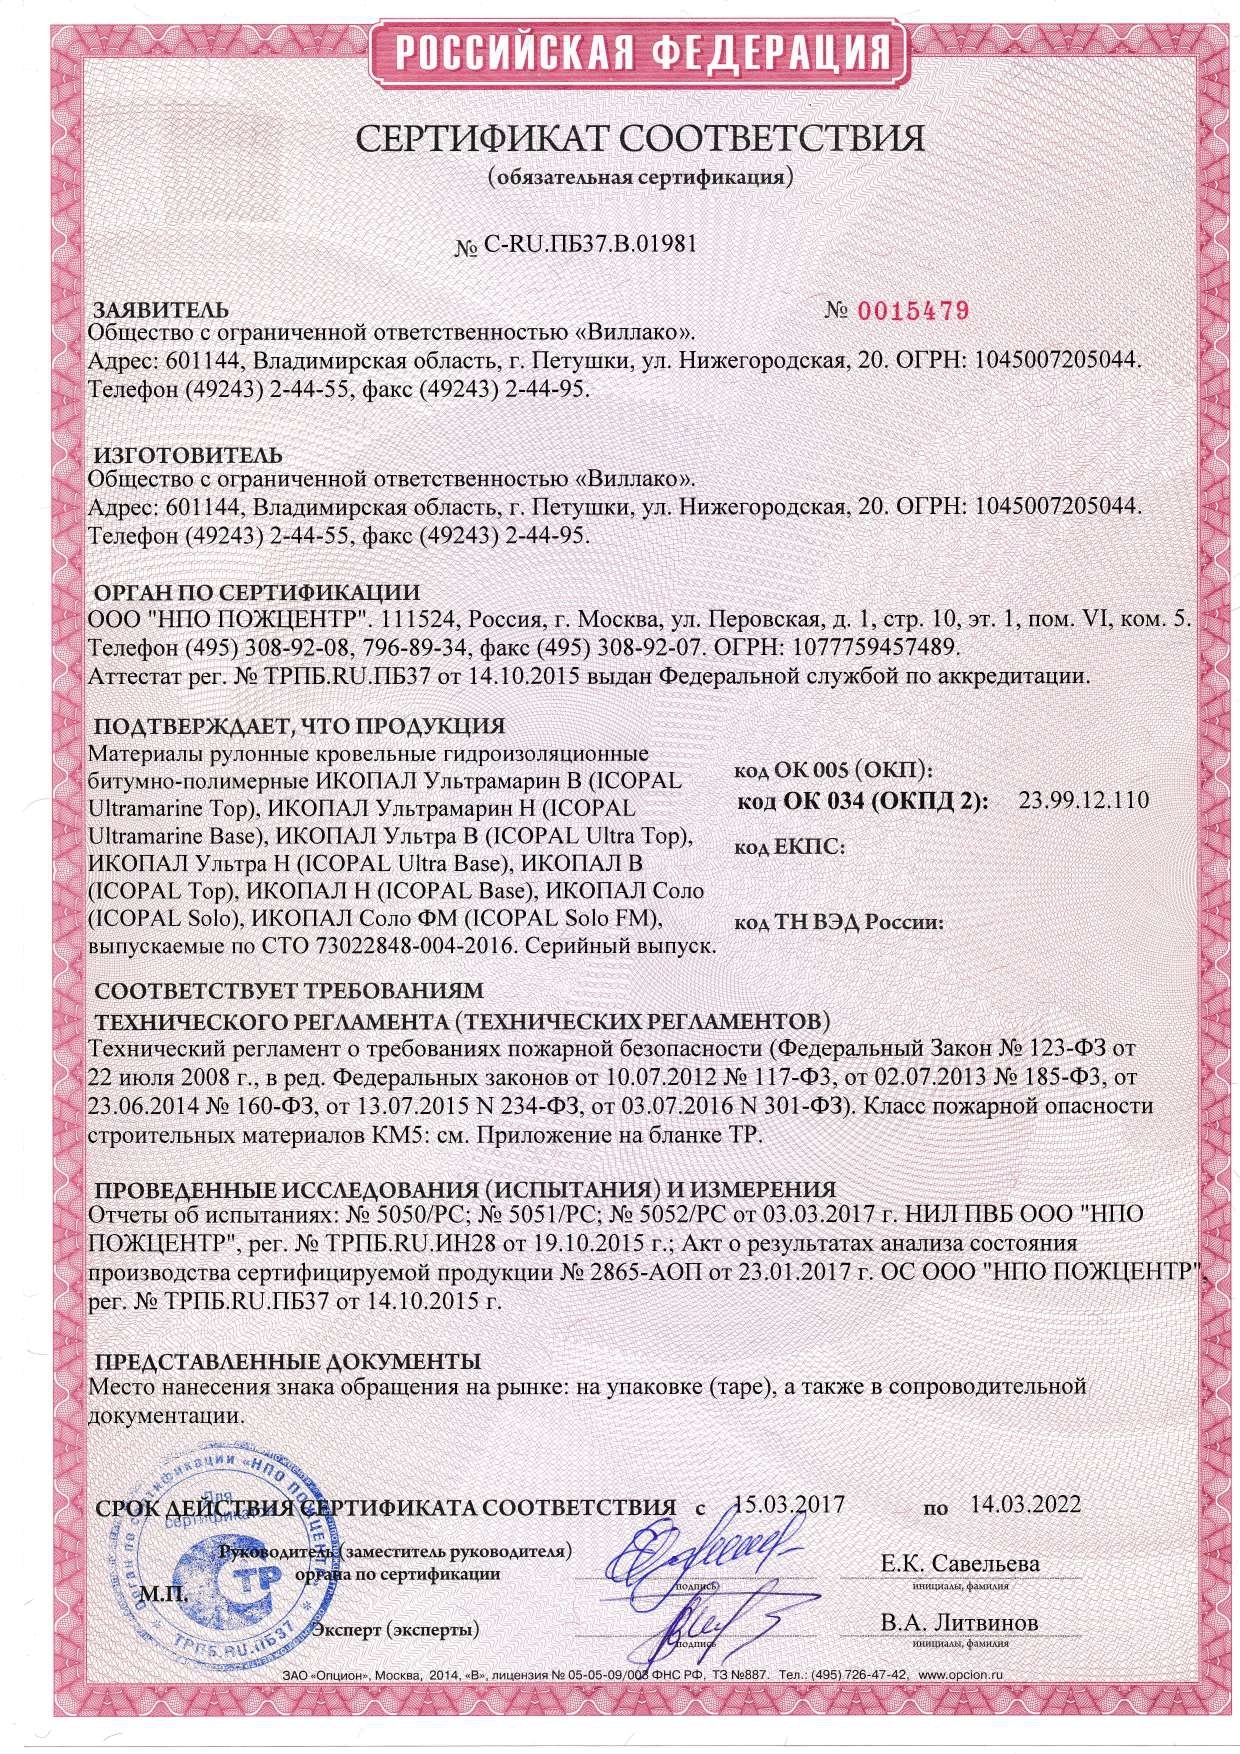 Сертификат соответствия Техническому регламенту о требованиях пожарной безопасности